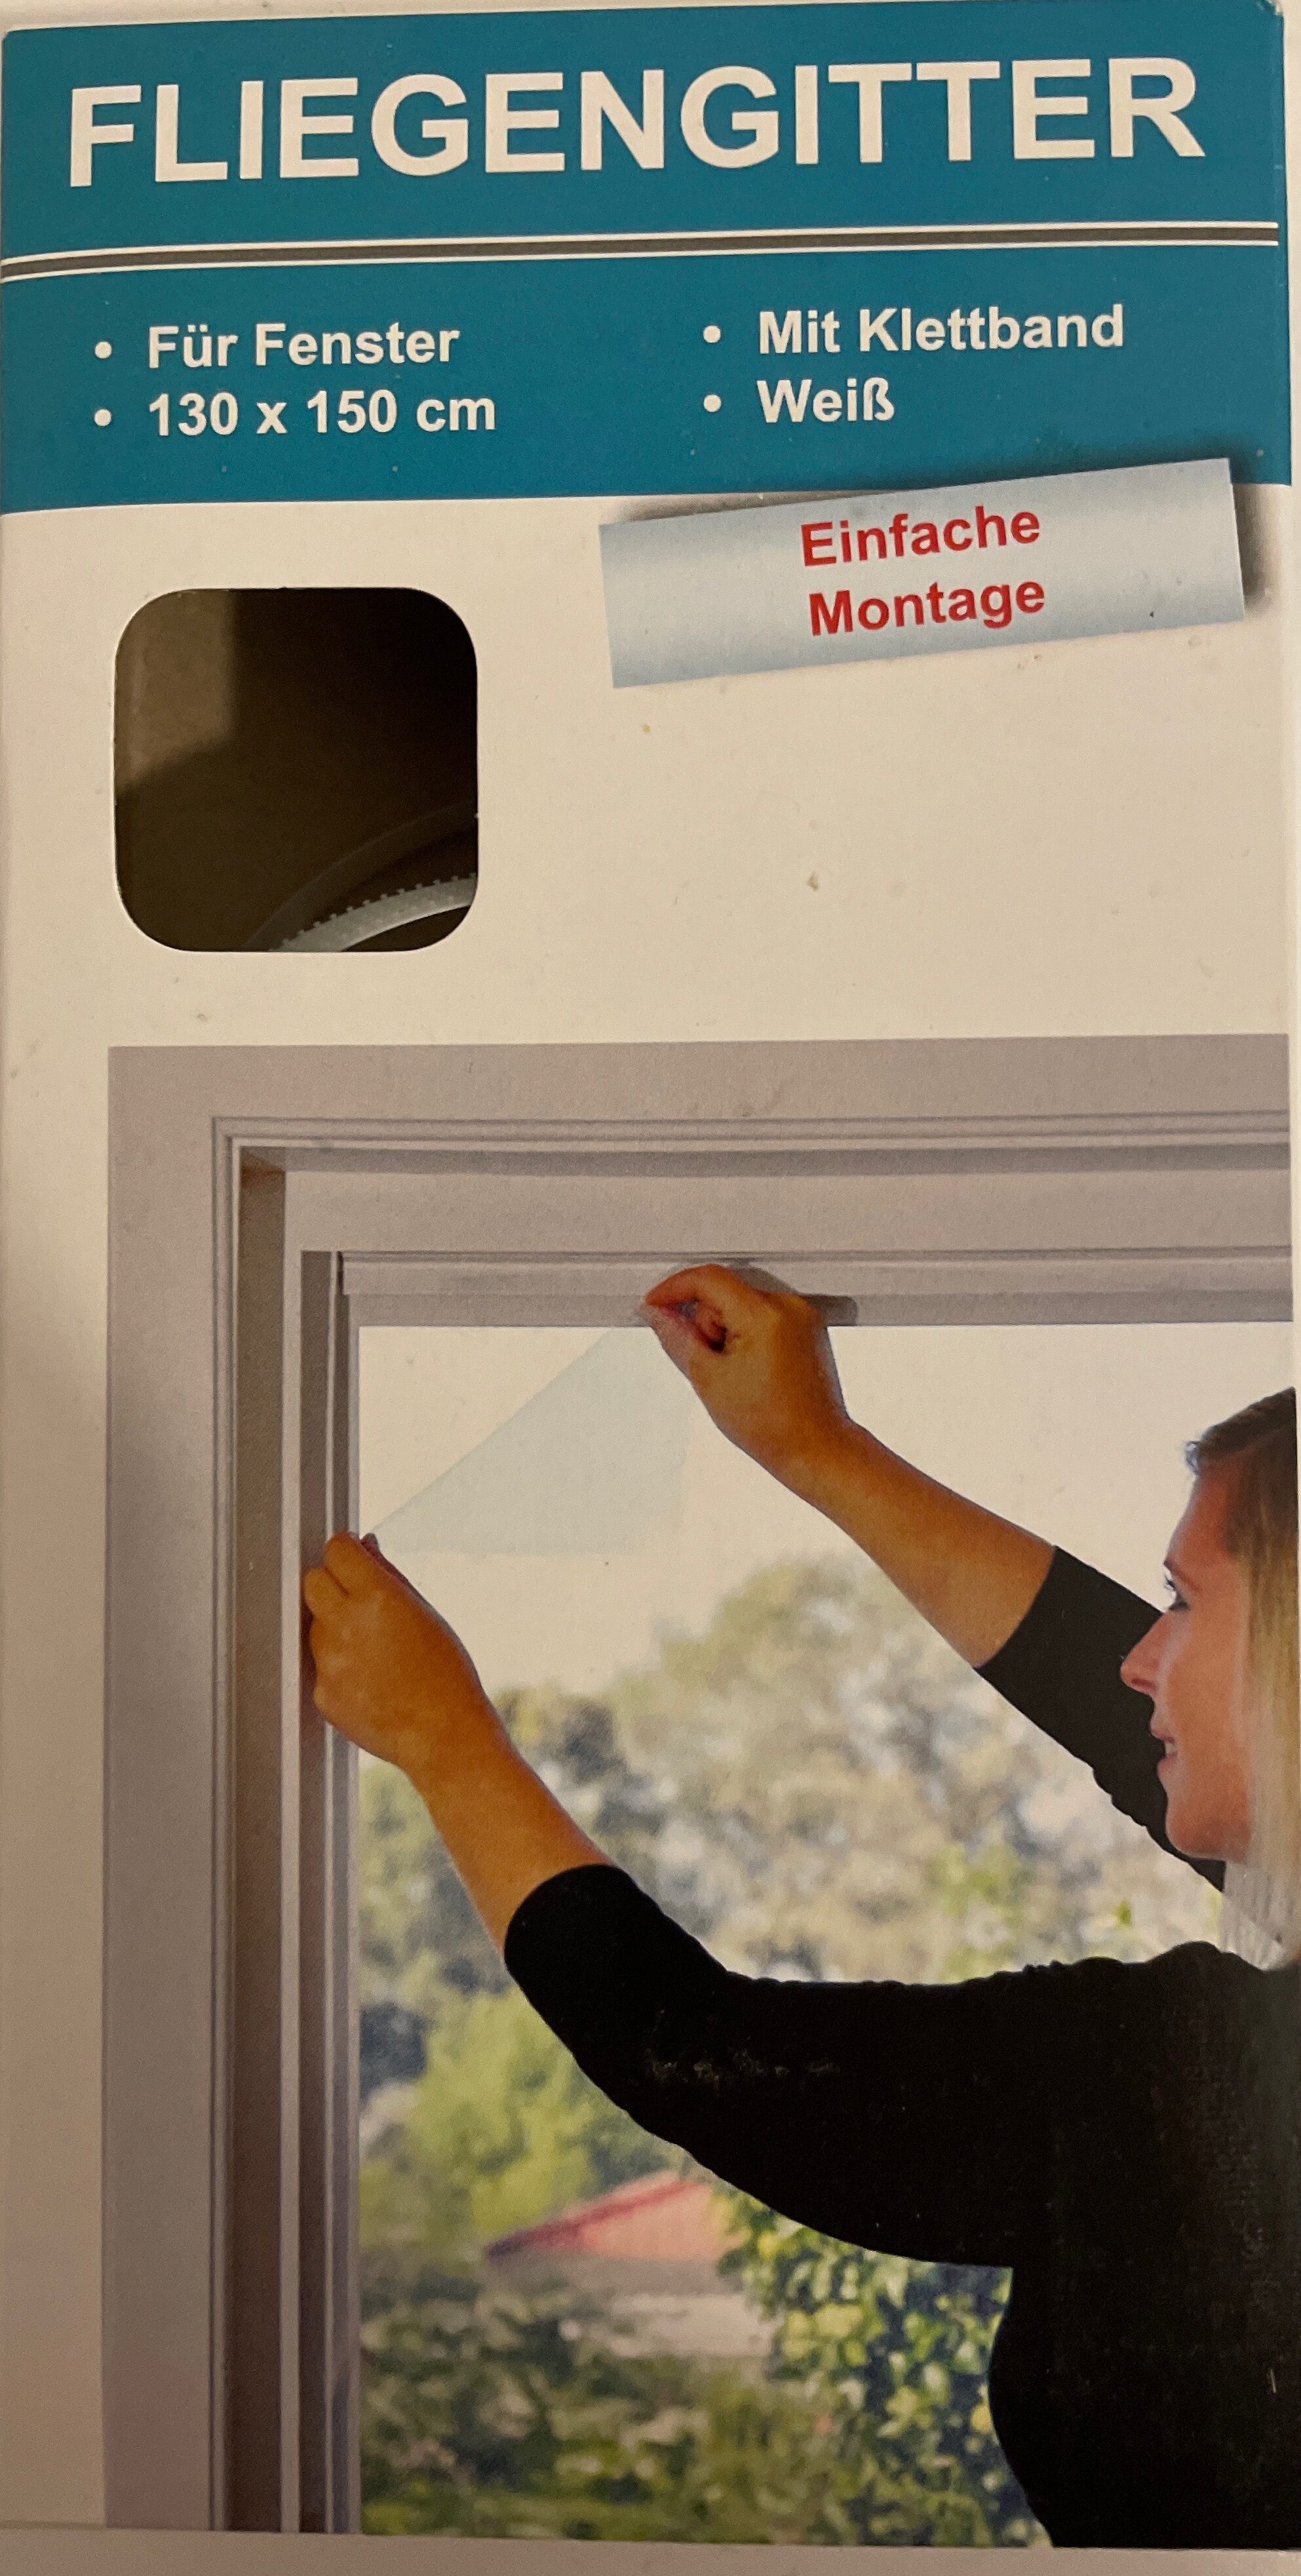 Fliegengitter für Fenster, weiß - 130x150cm